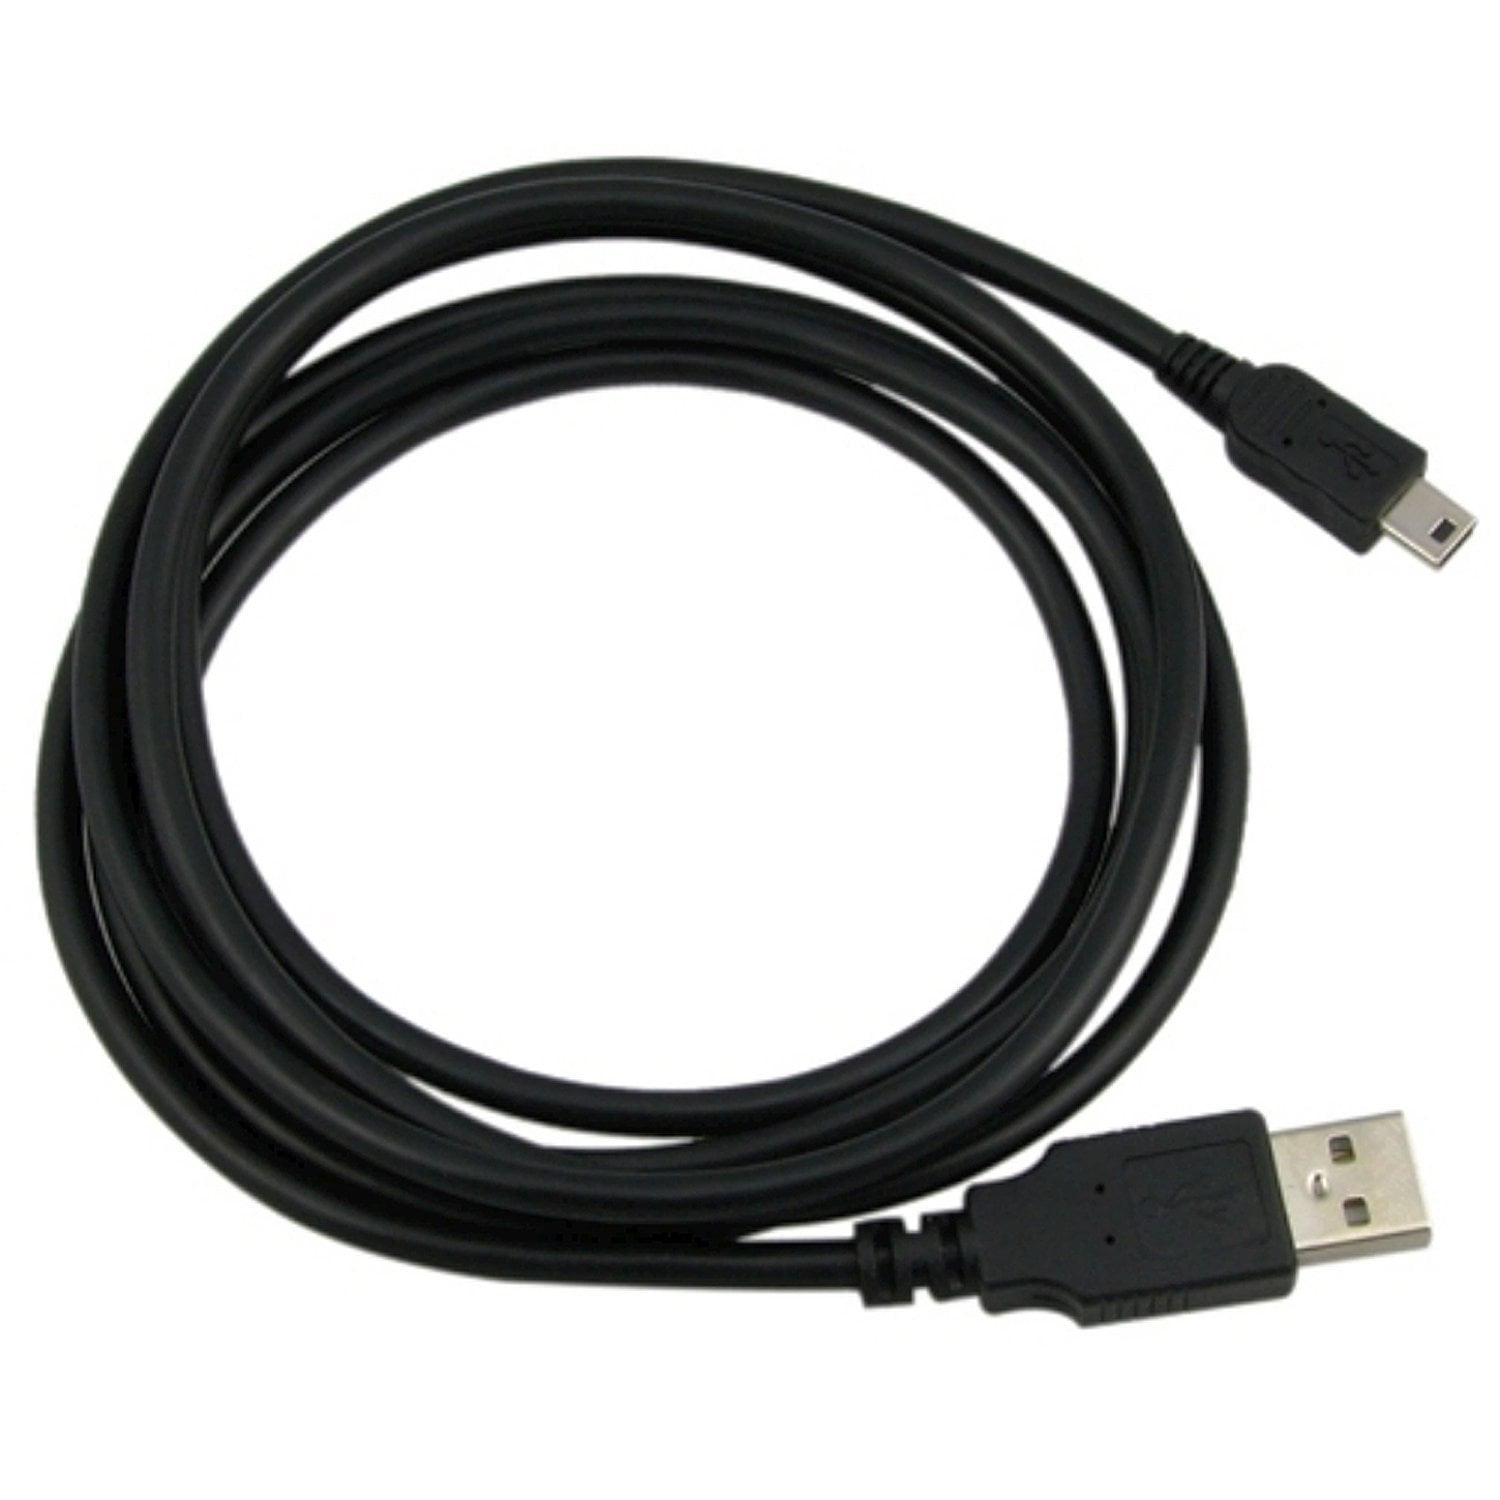 USB CABLE CORD FOR CANON POWERSHOT SD1200 SD1300 SD1400 SD200 SD30 SD40 